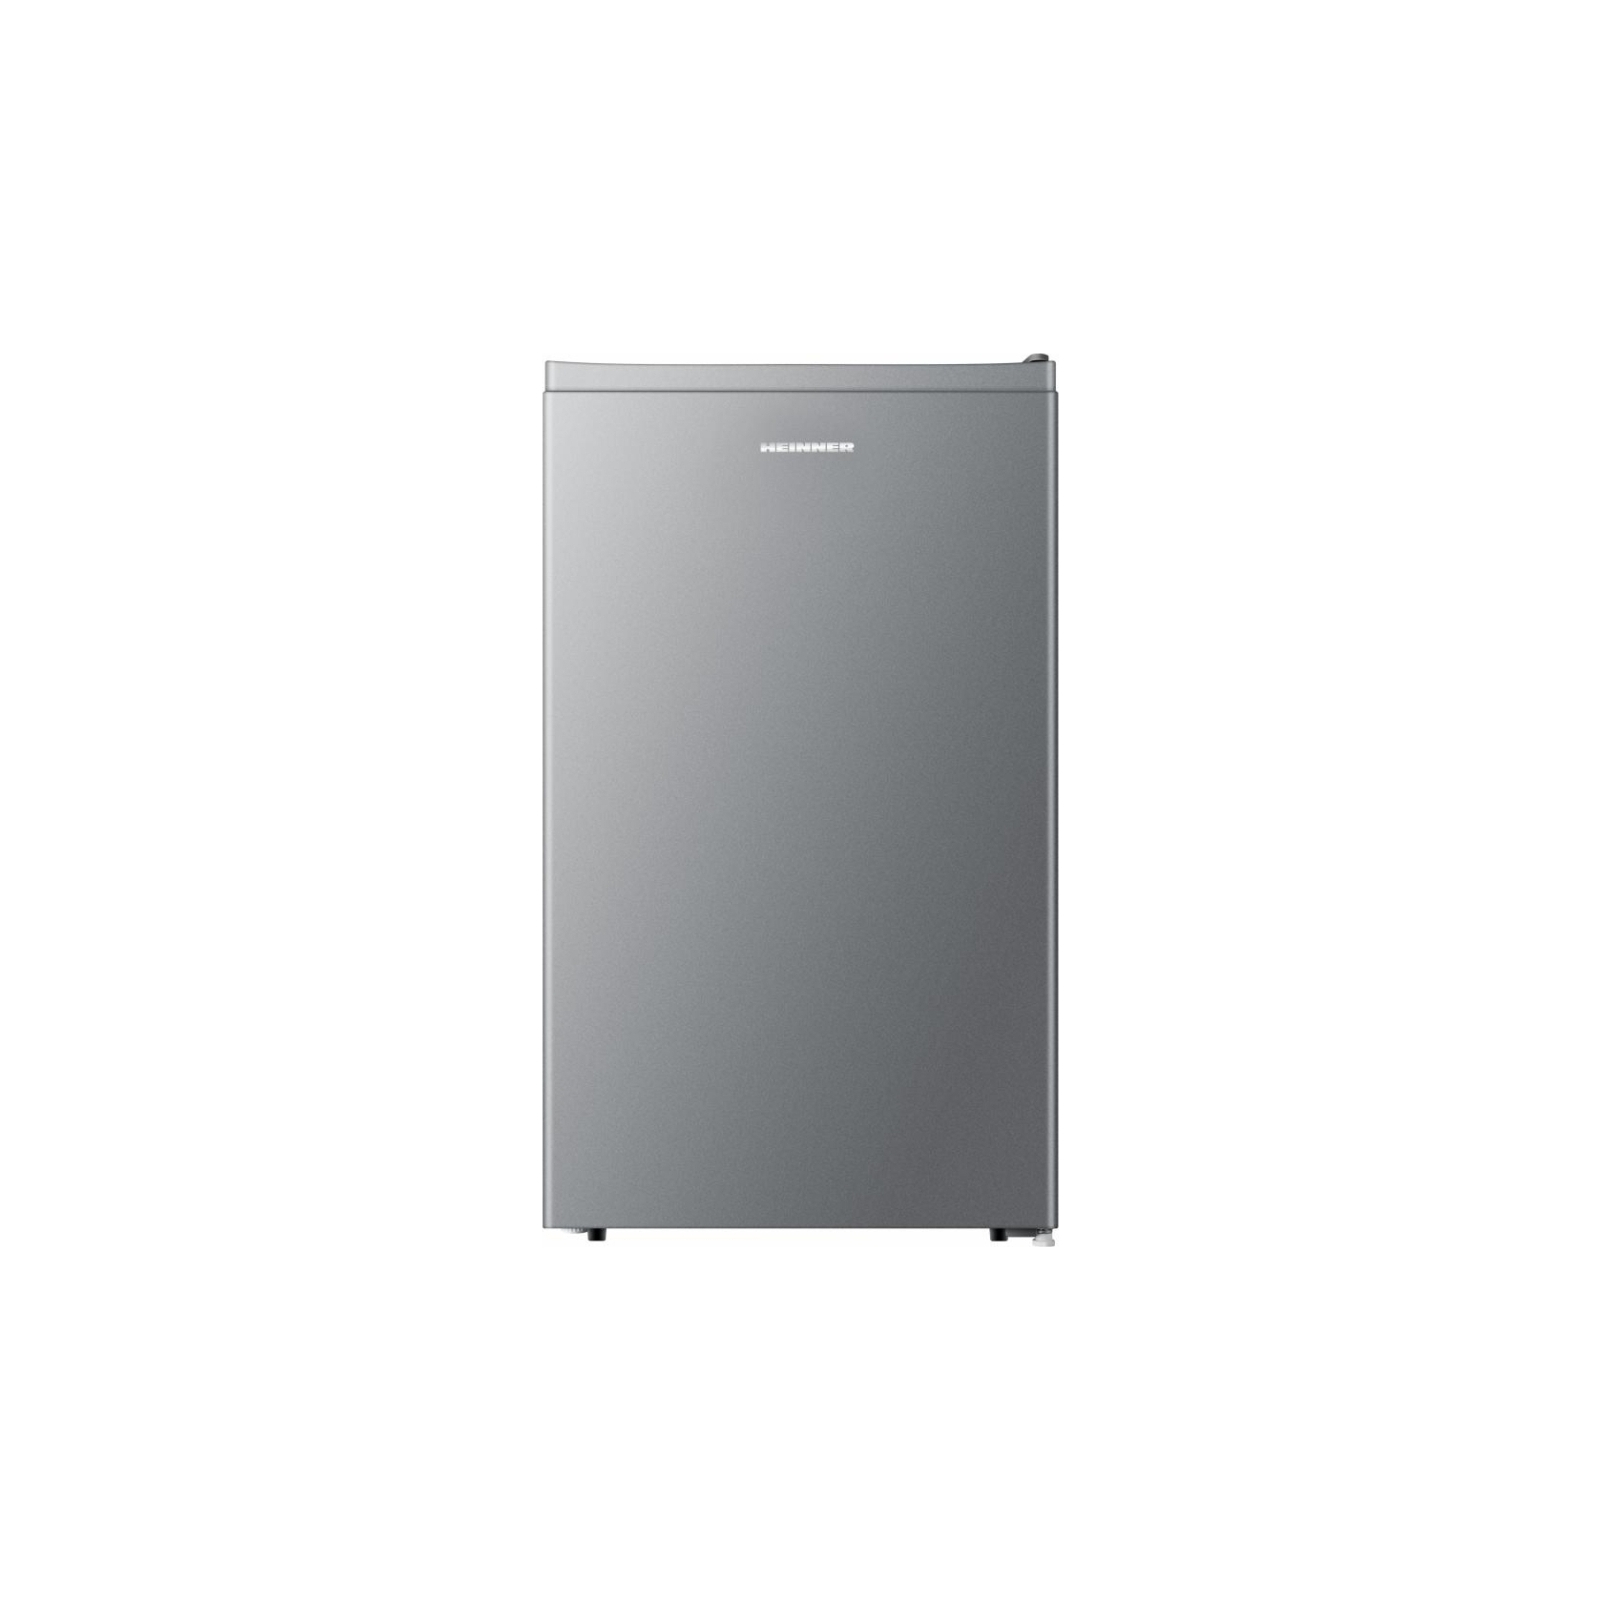 Холодильник HEINNER HF-N94SF+